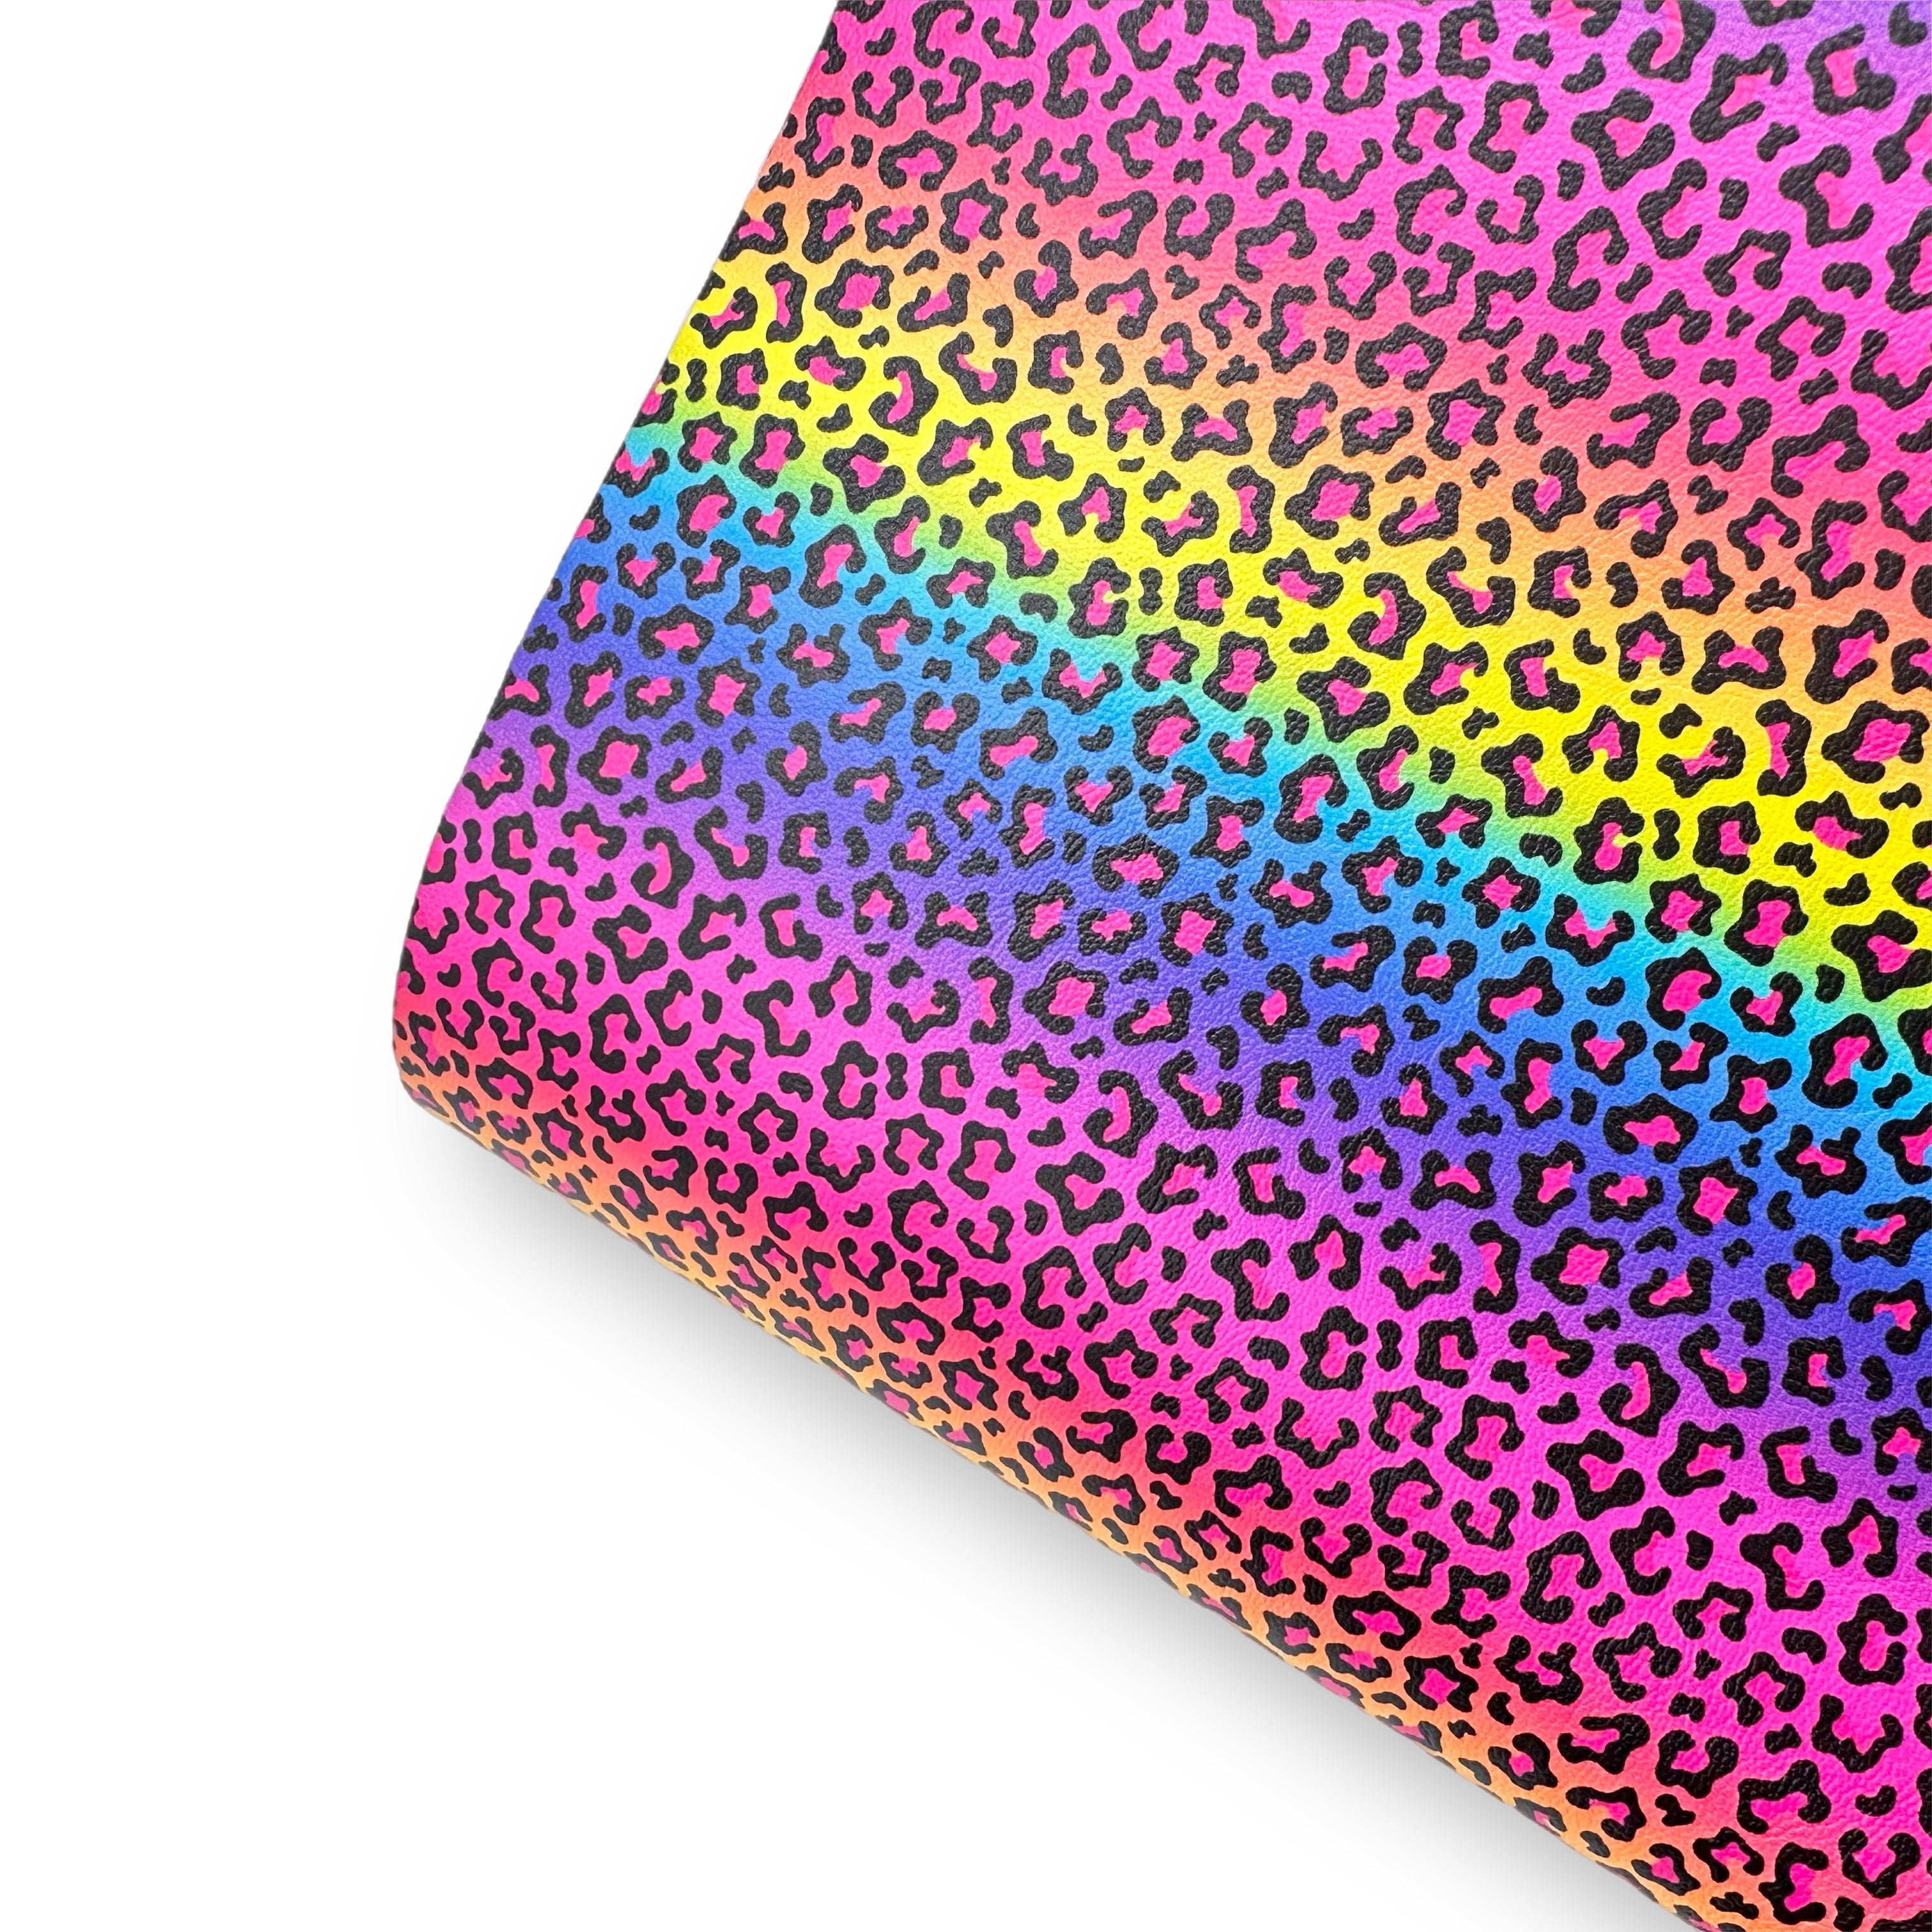 Neon Bright Wild Leopard Premium Faux Leather Fabric